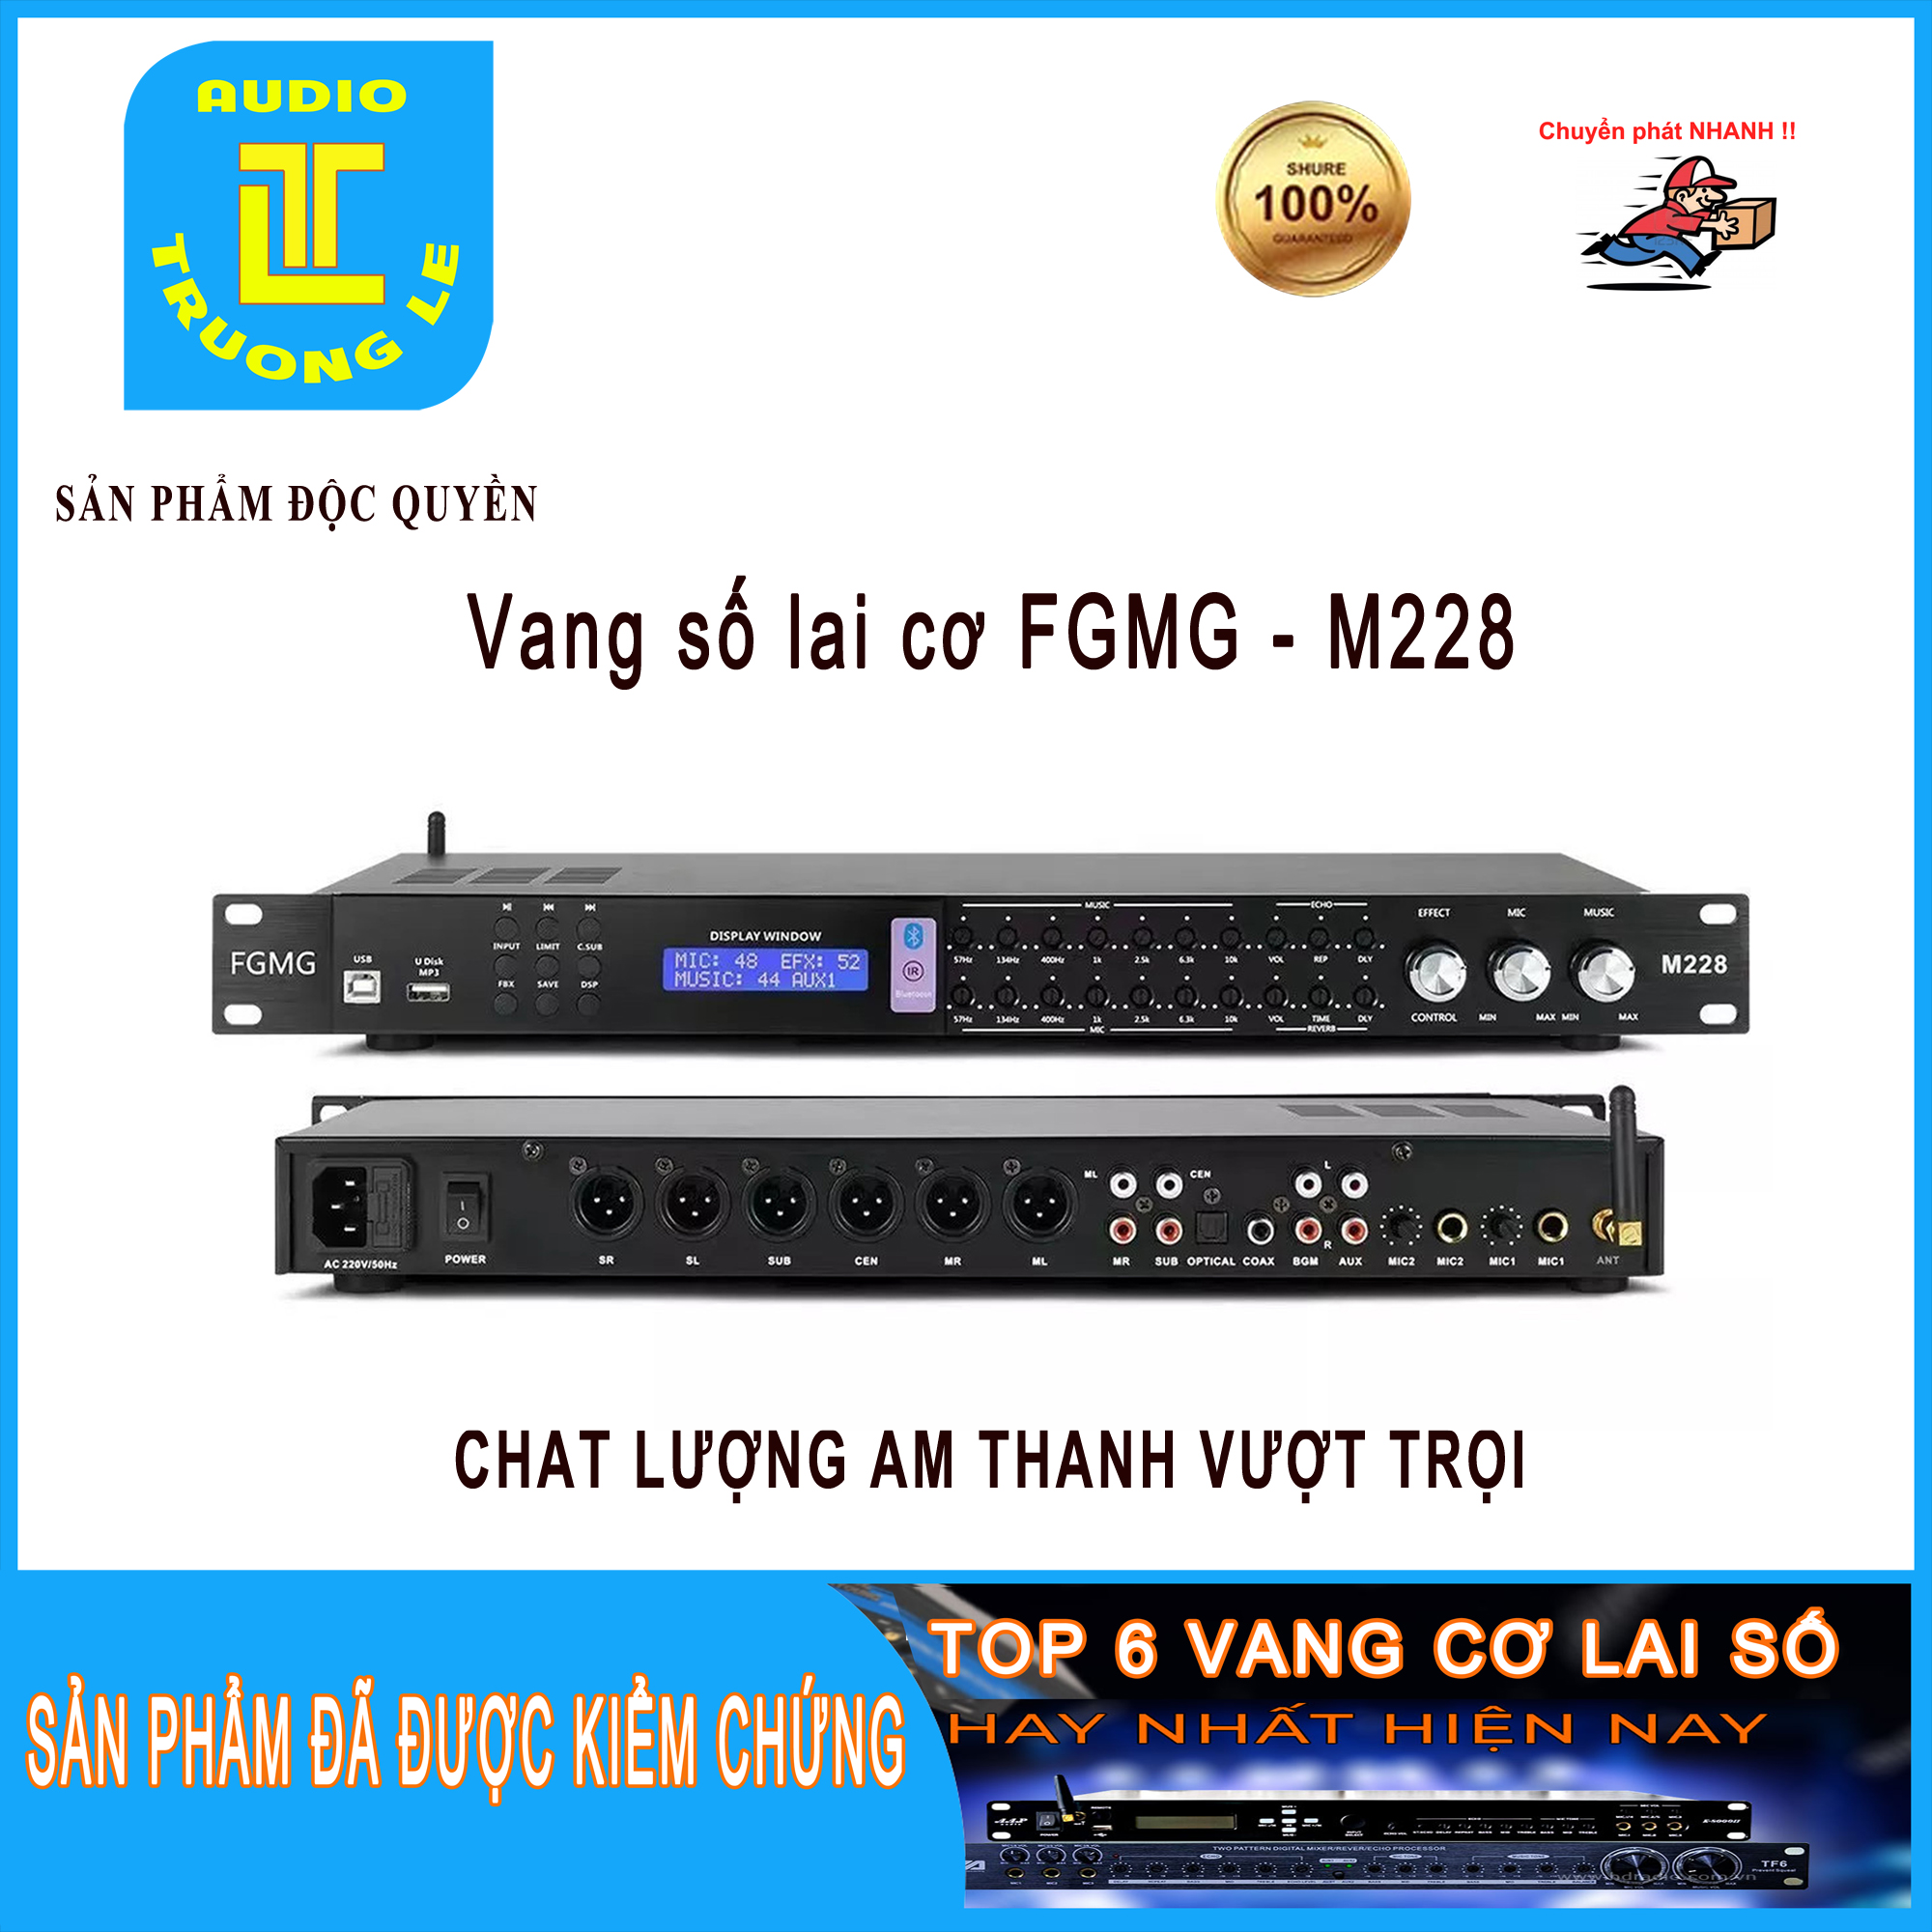 VANG CƠ LAI SỐ FGMG - M228 - Vang hát karaoke gia đình - Vang có thể kết hợp với nhiều micro cùng lúc - Trường Lệ Audio